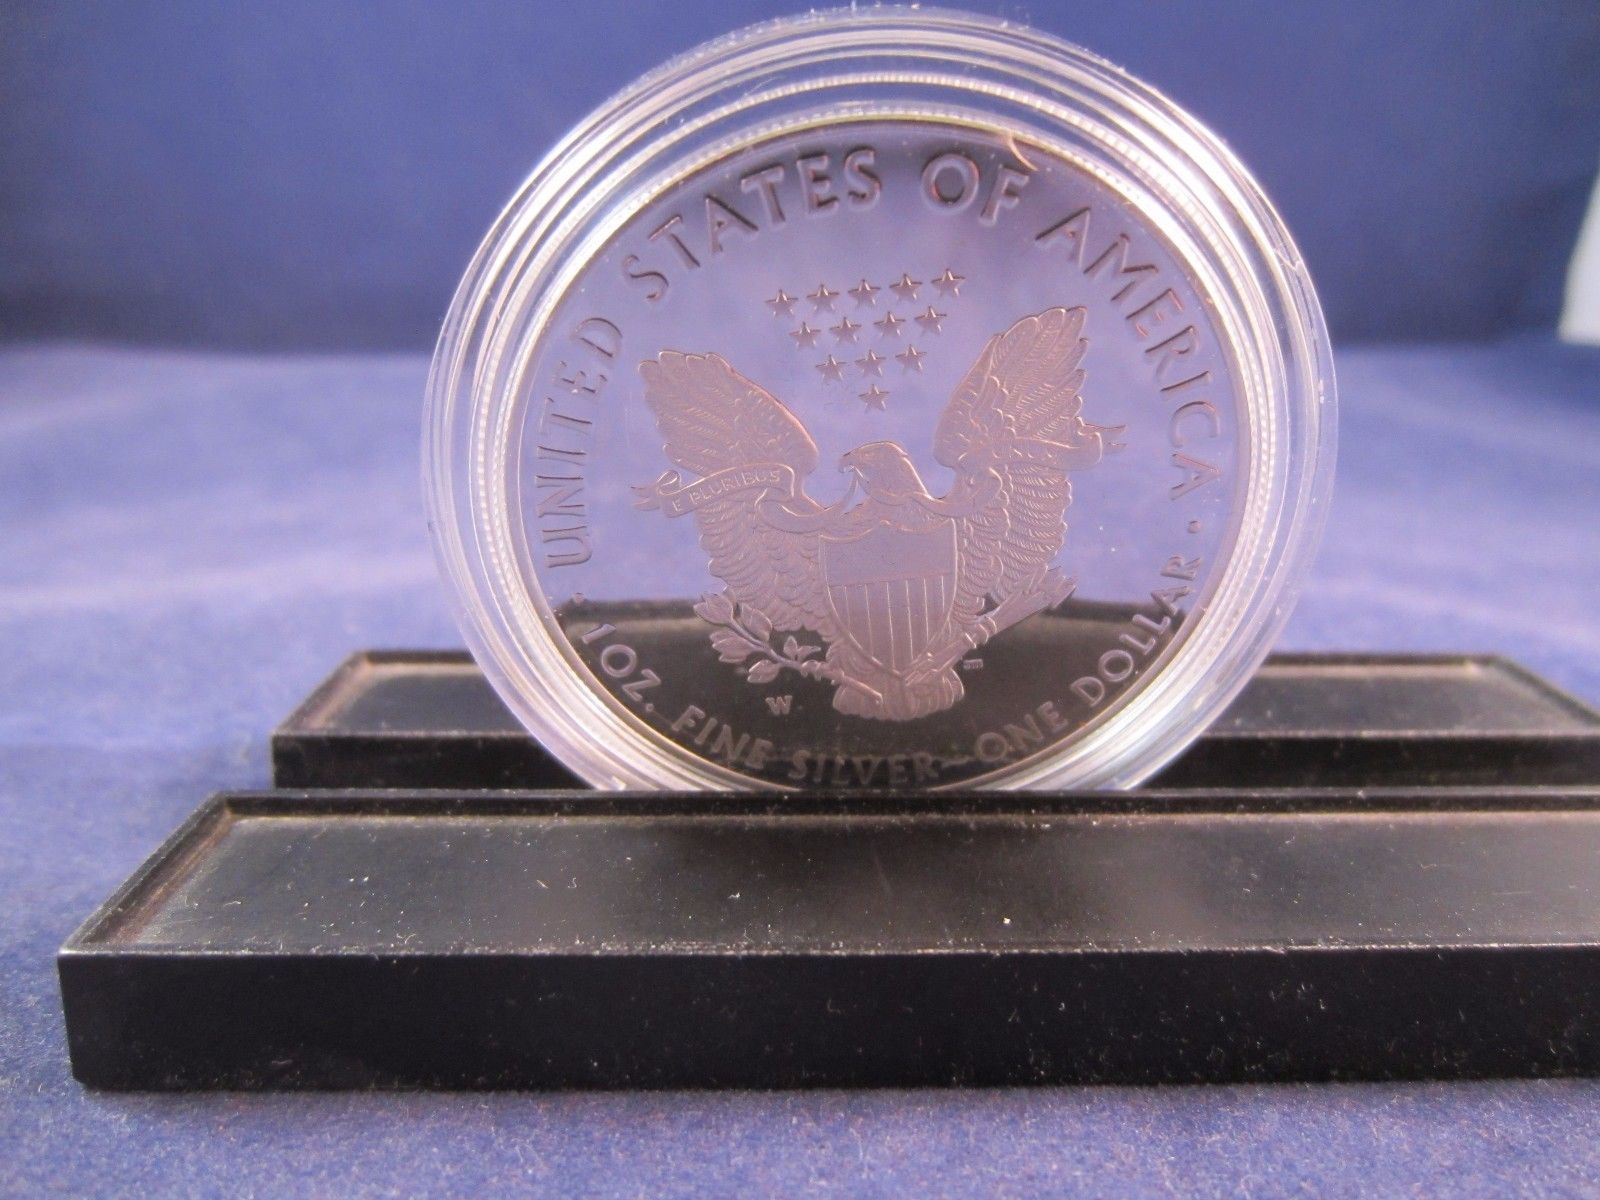 Overige Home Decor Amerikaanse Adelaar Zilveren Munt Niet-magnetisch Standbeeld 1oz Verzilverd 40 mm Herdenkingsdecoratie Niet-valuta Coll326K